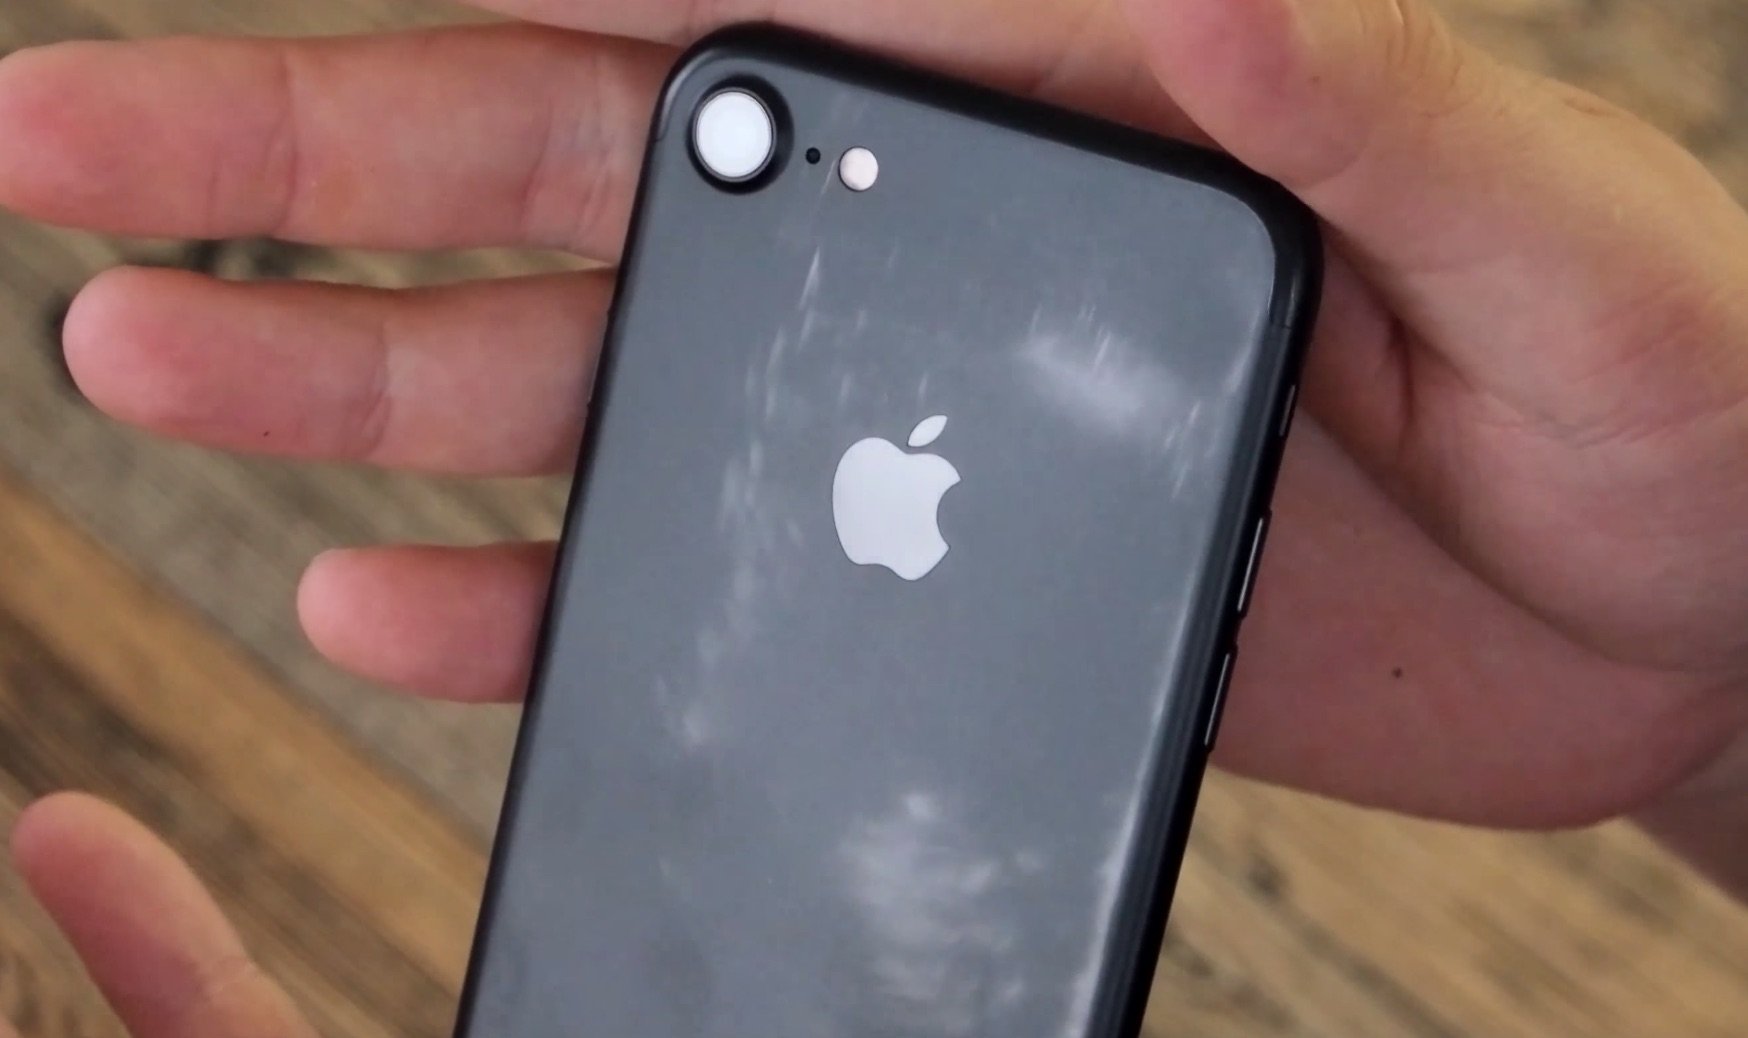 Neue Farbprobleme: schwarzes iPhone 7 verliert Matt-Effekt durch Nutzung? 7